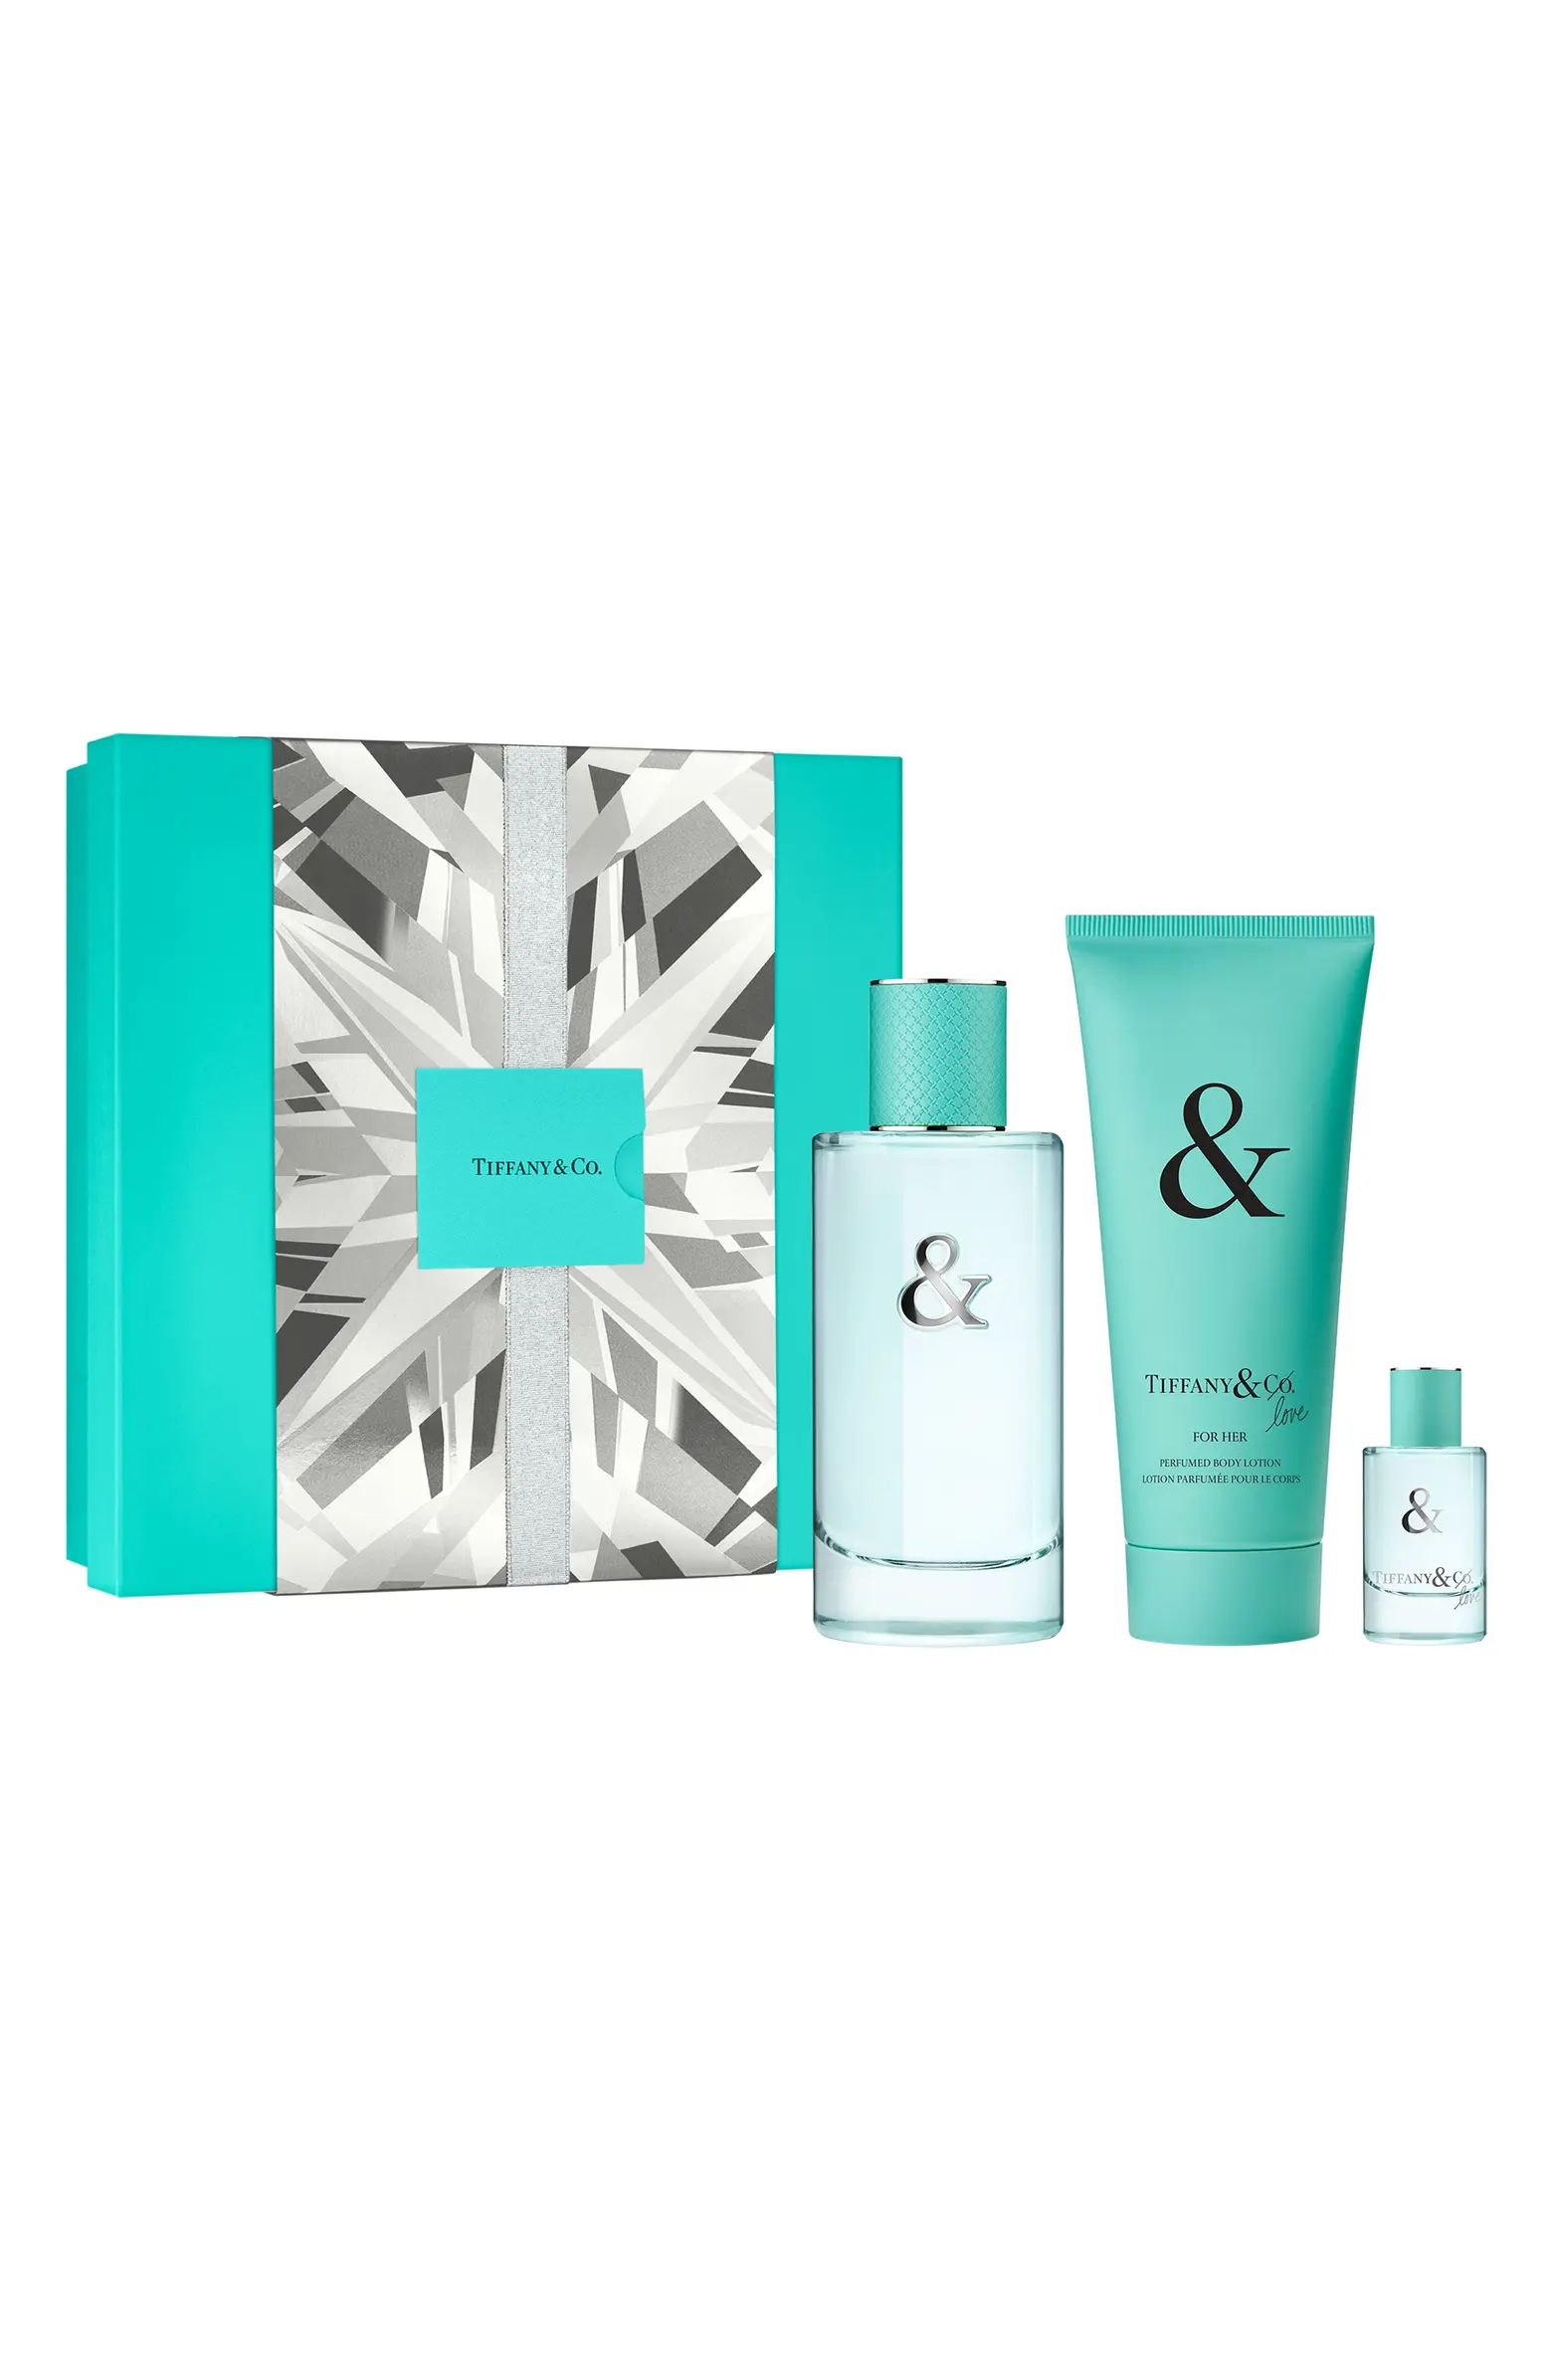 Tiffany & Love Eau de Parfum 3-Piece Gift Set $205 Value | Nordstrom